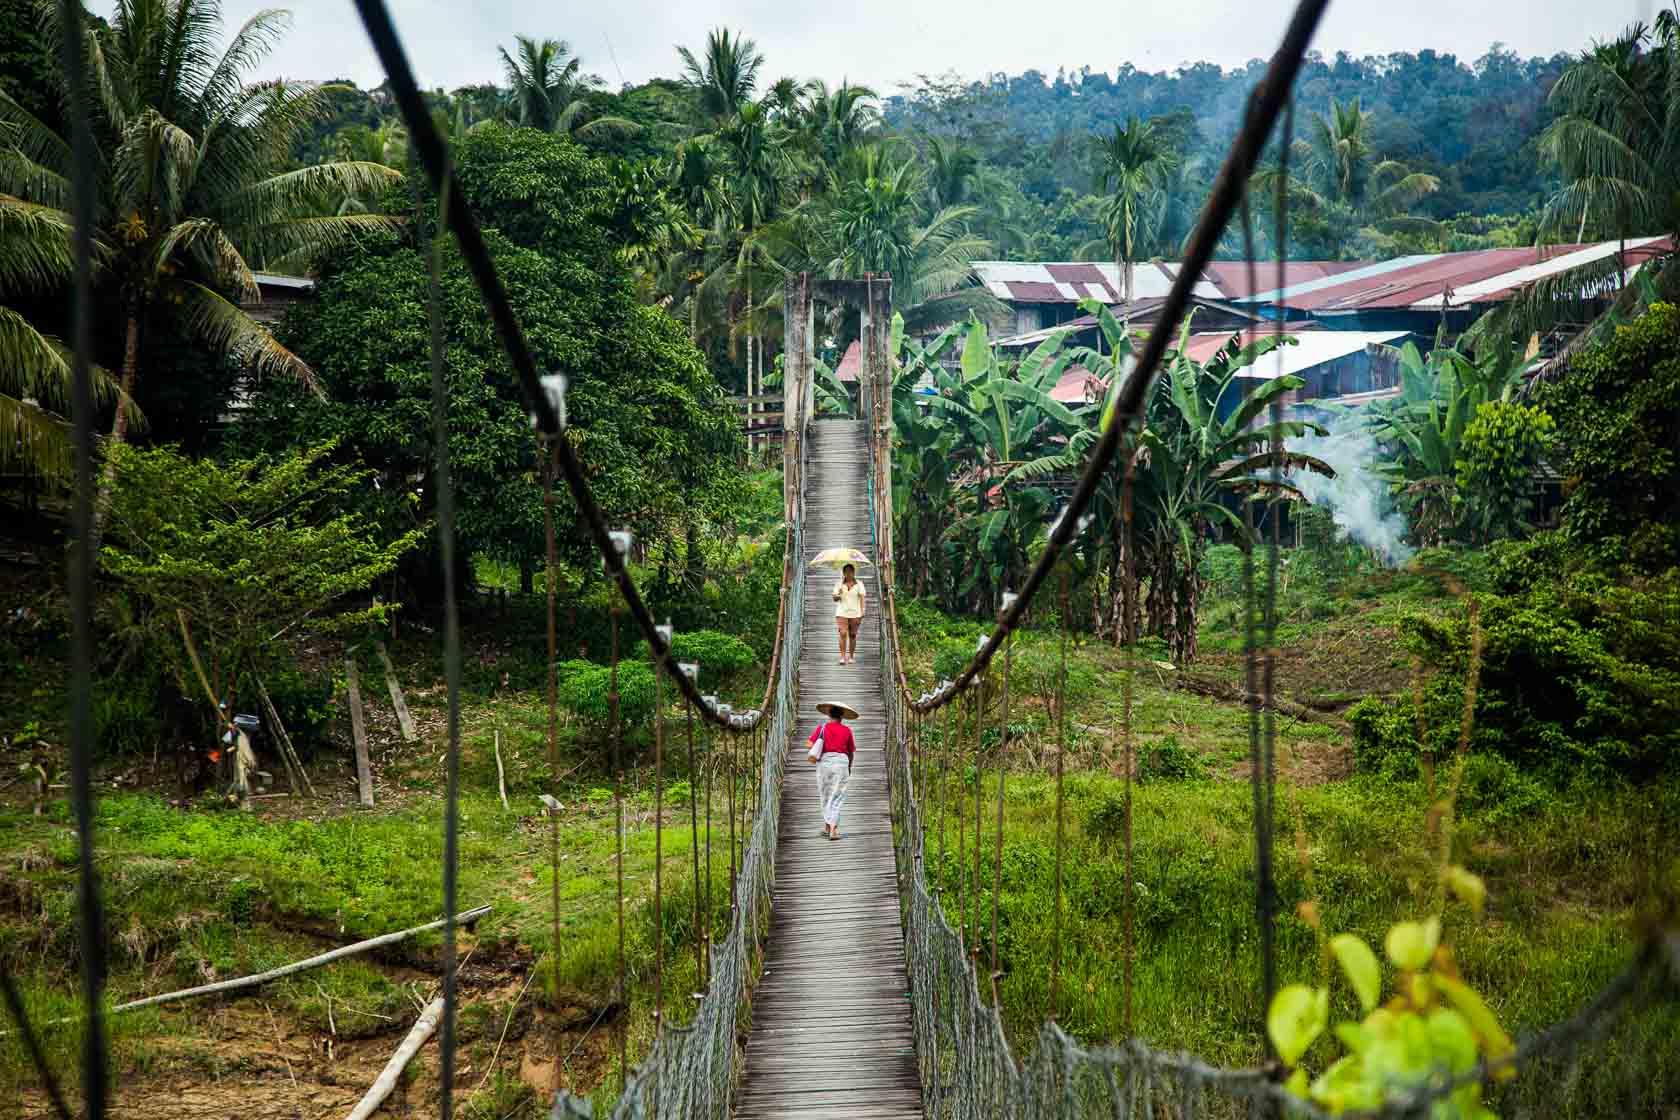 Deux femmes marchent sur un pont suspendu à l'entrée du village de Punan Bah, zone très touchée par l'accaparement des terres des communautés autochtones Punan Bah, Sarawak, Malaisie - 2015